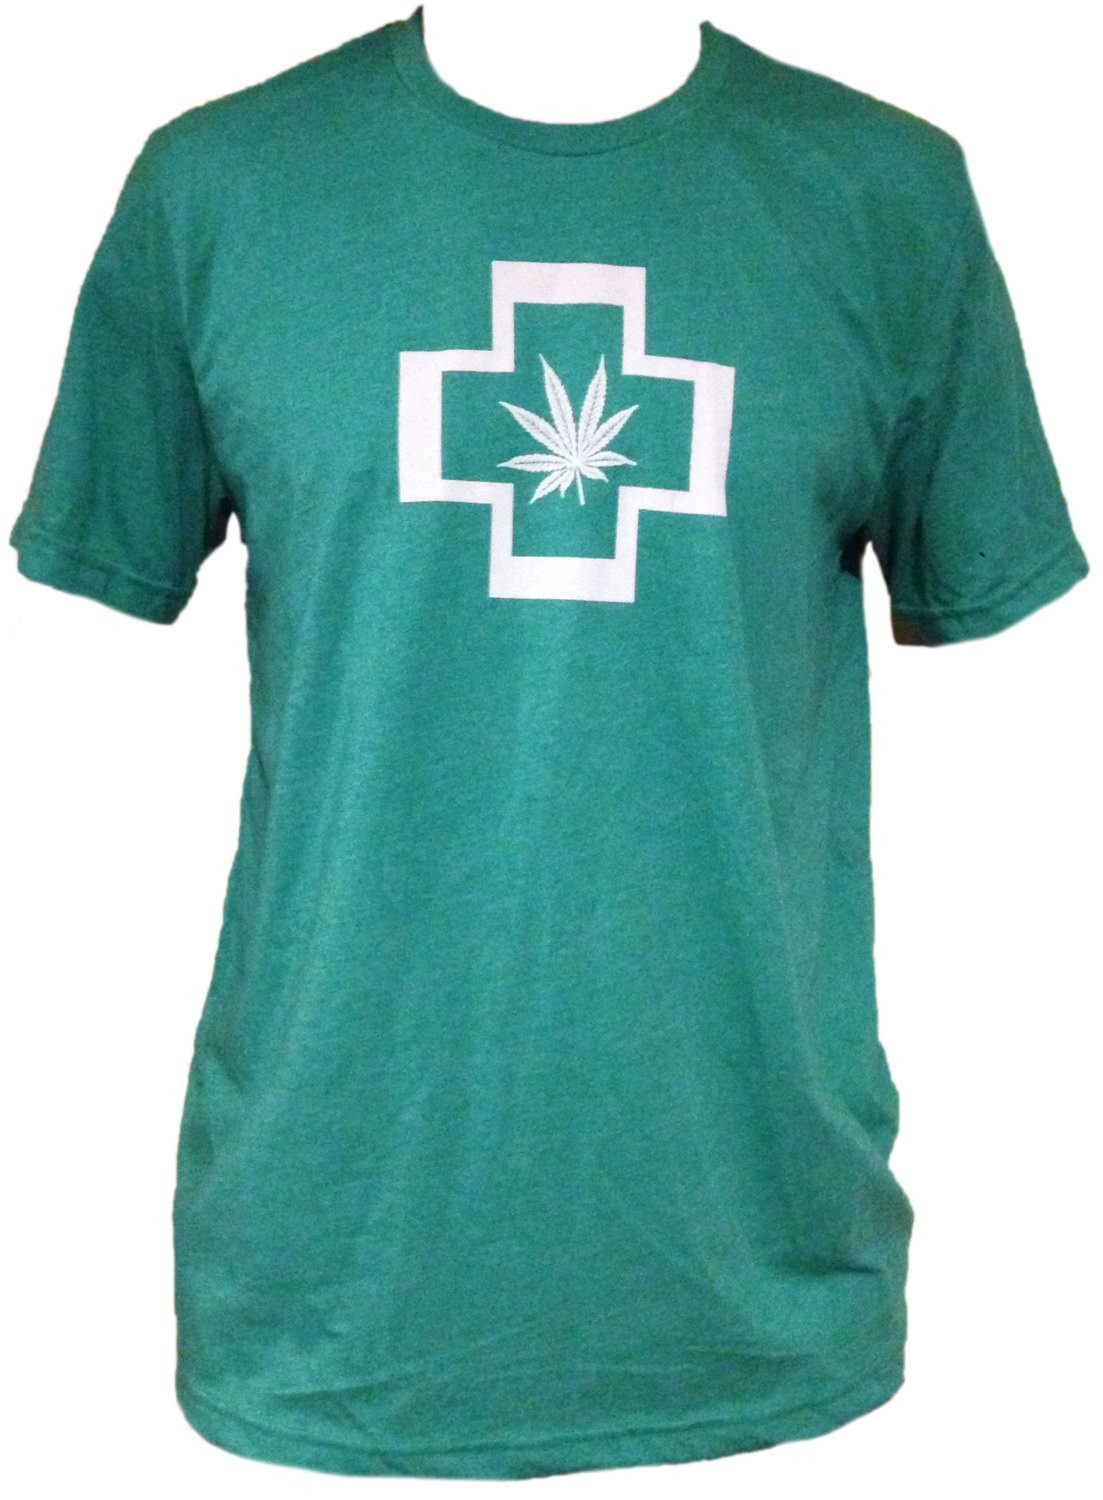 Green Cross Unisex T-shirt